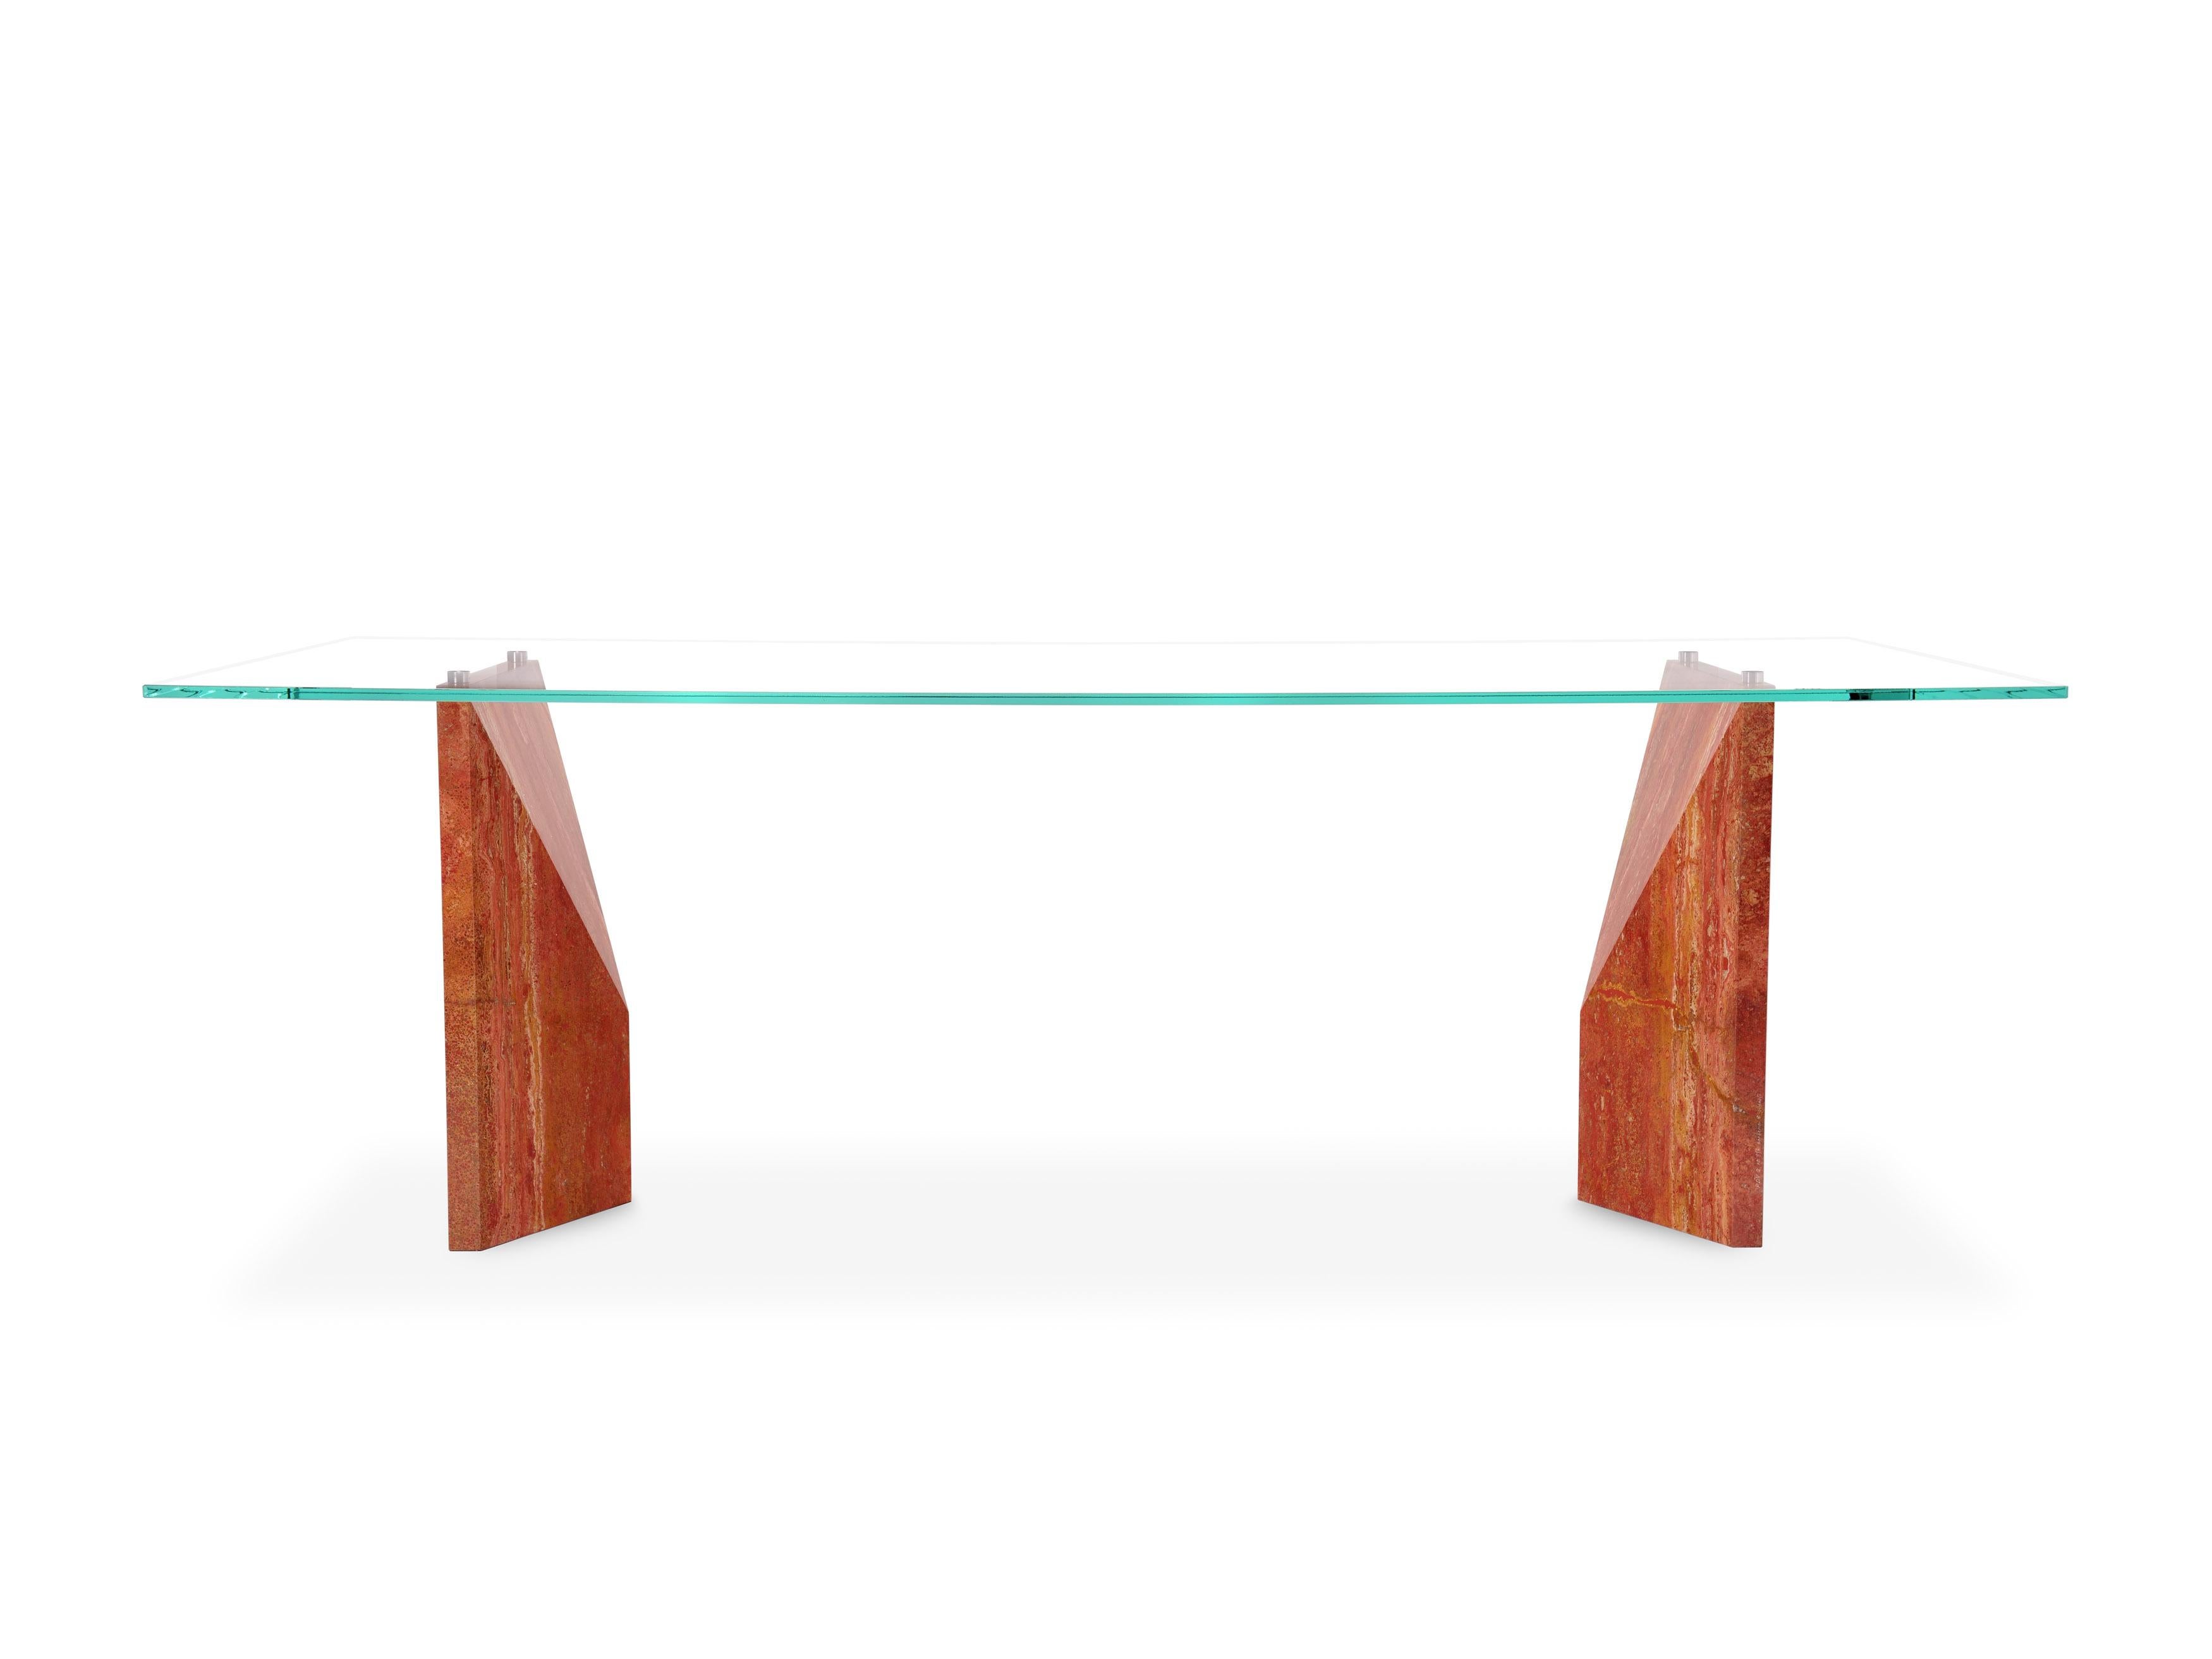 PD V2 est une table conçue et créée par l'Atelier Barberini & Gunnell en Italie. La base est constituée de deux solides monolithes de travertin rouge de première qualité et le dessus est en verre de cristal extra-clair de la plus haute qualité. Les